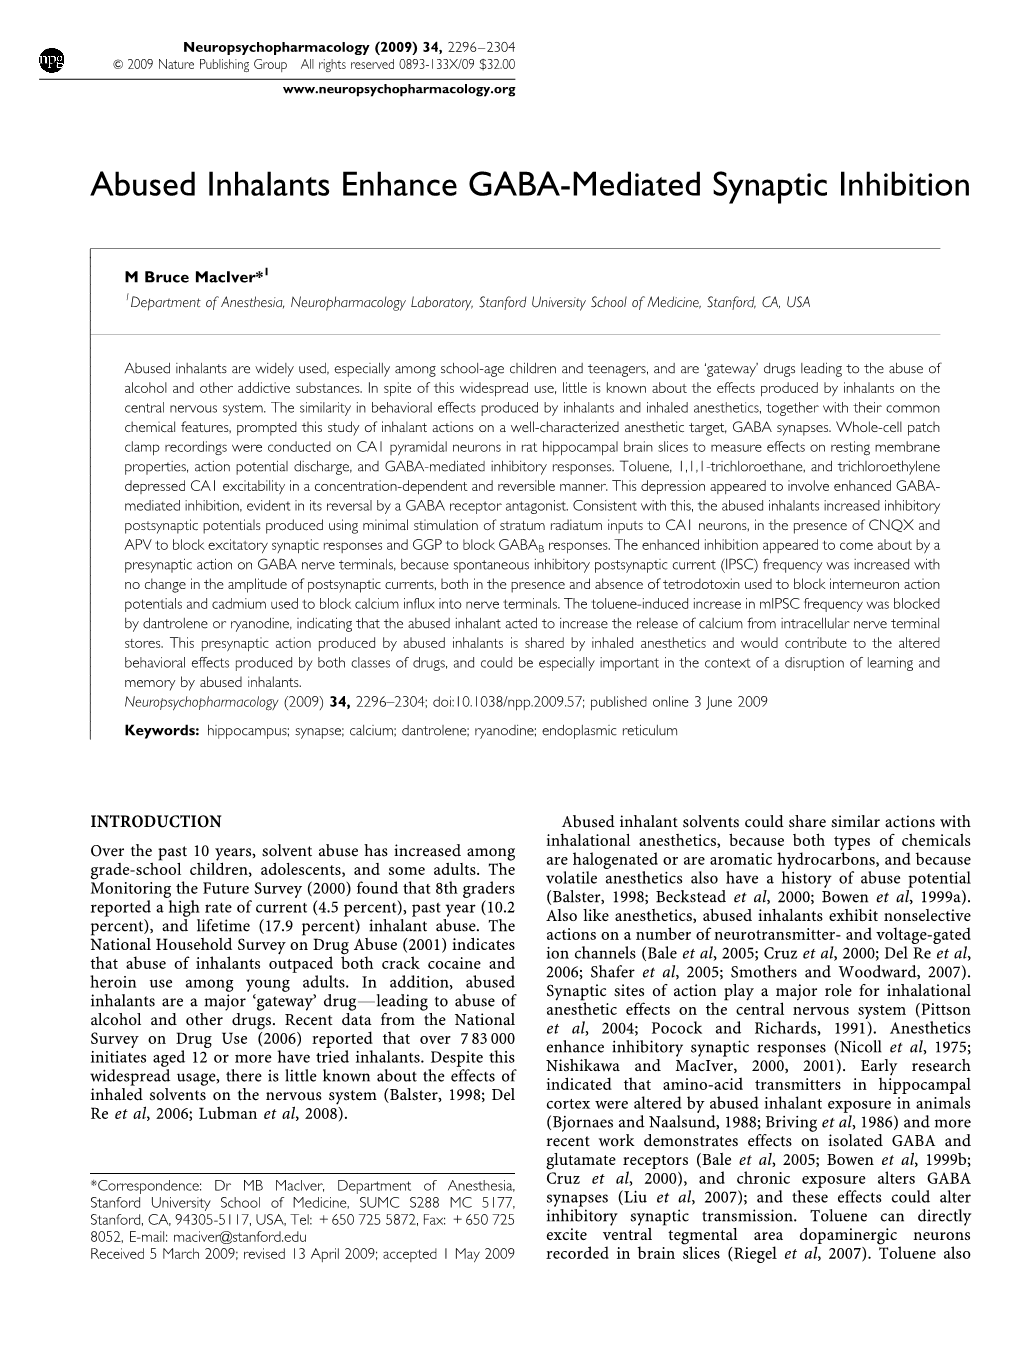 Abused Inhalants Enhance GABA-Mediated Synaptic Inhibition